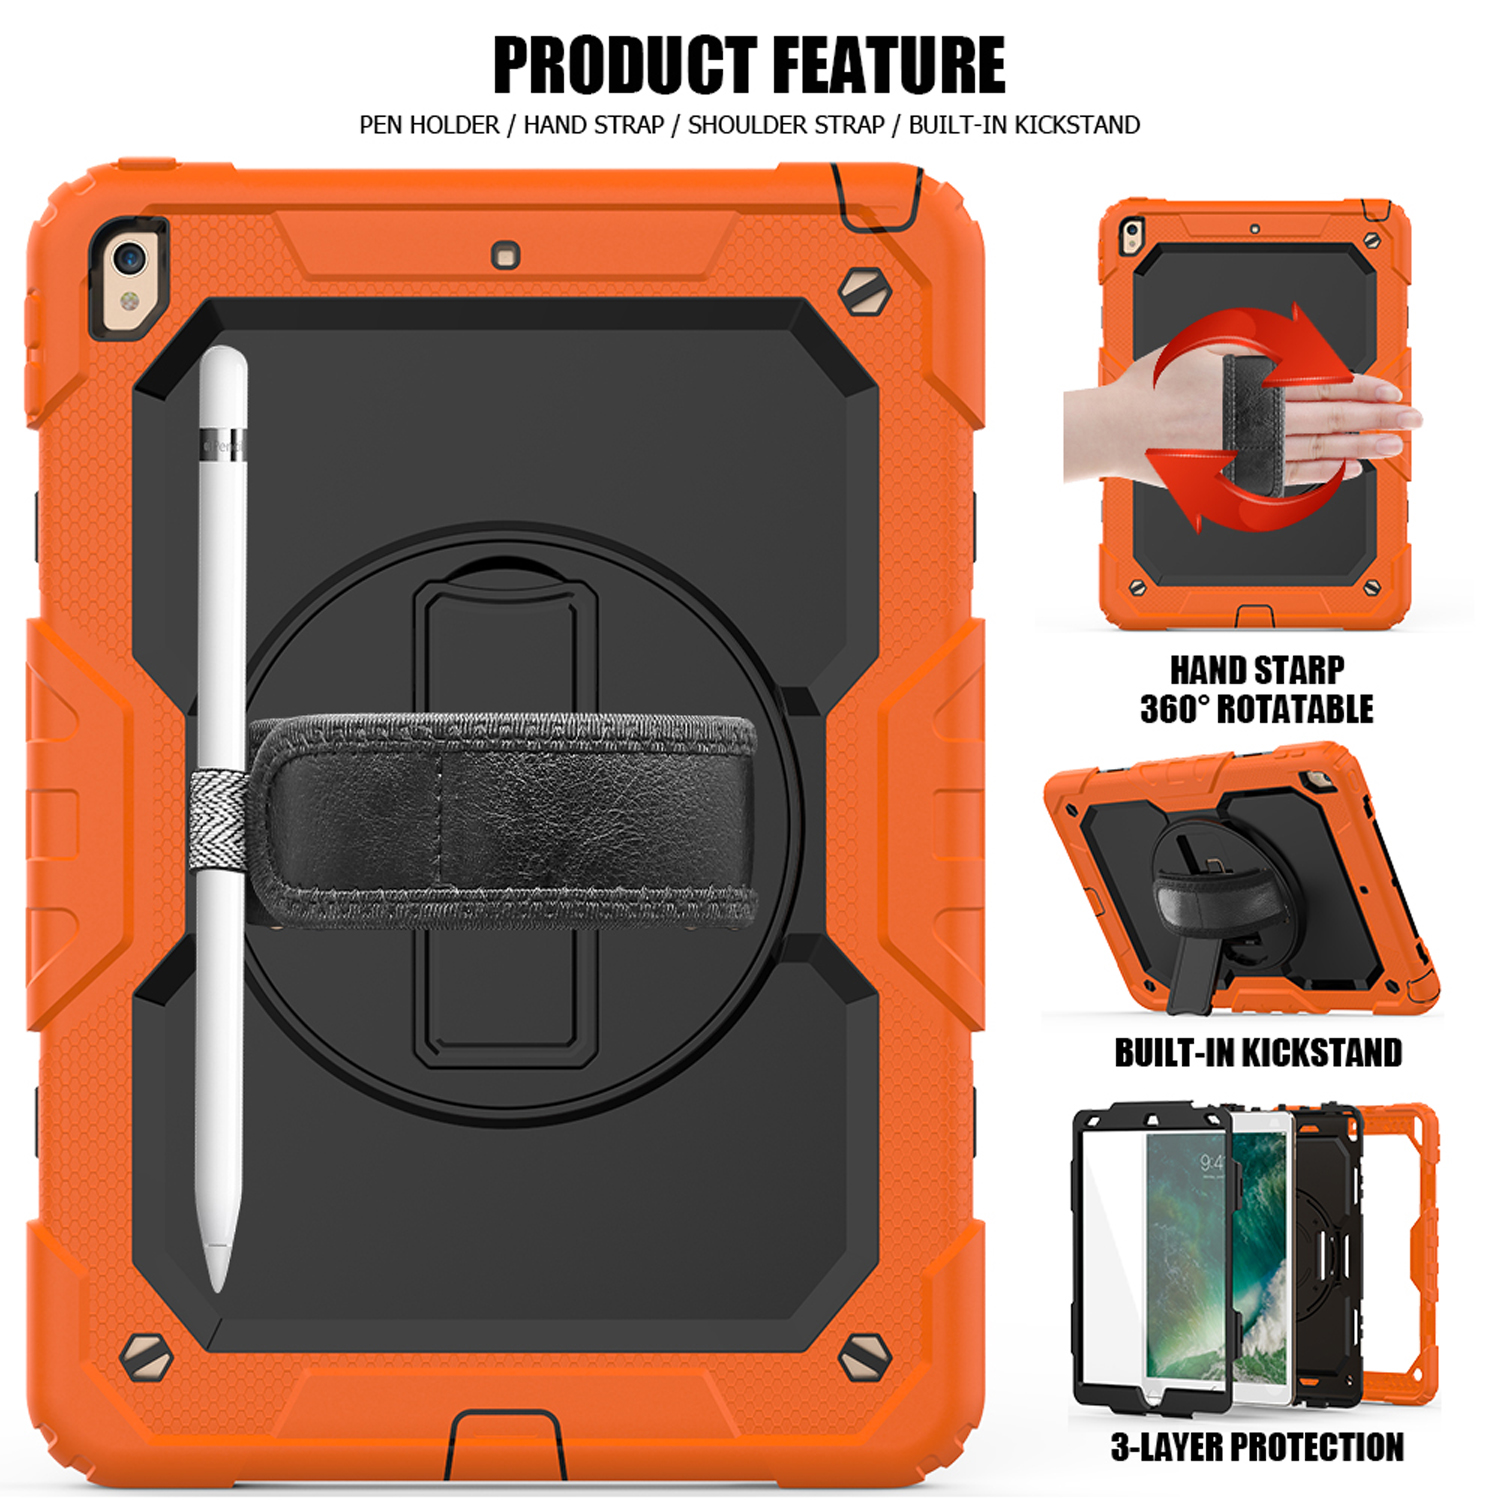 LOBWERK 4in1 Schutzhülle Case Bookcover 2019/2020/2021 10.2 10.2 Apple iPad Orange für Kunststoff